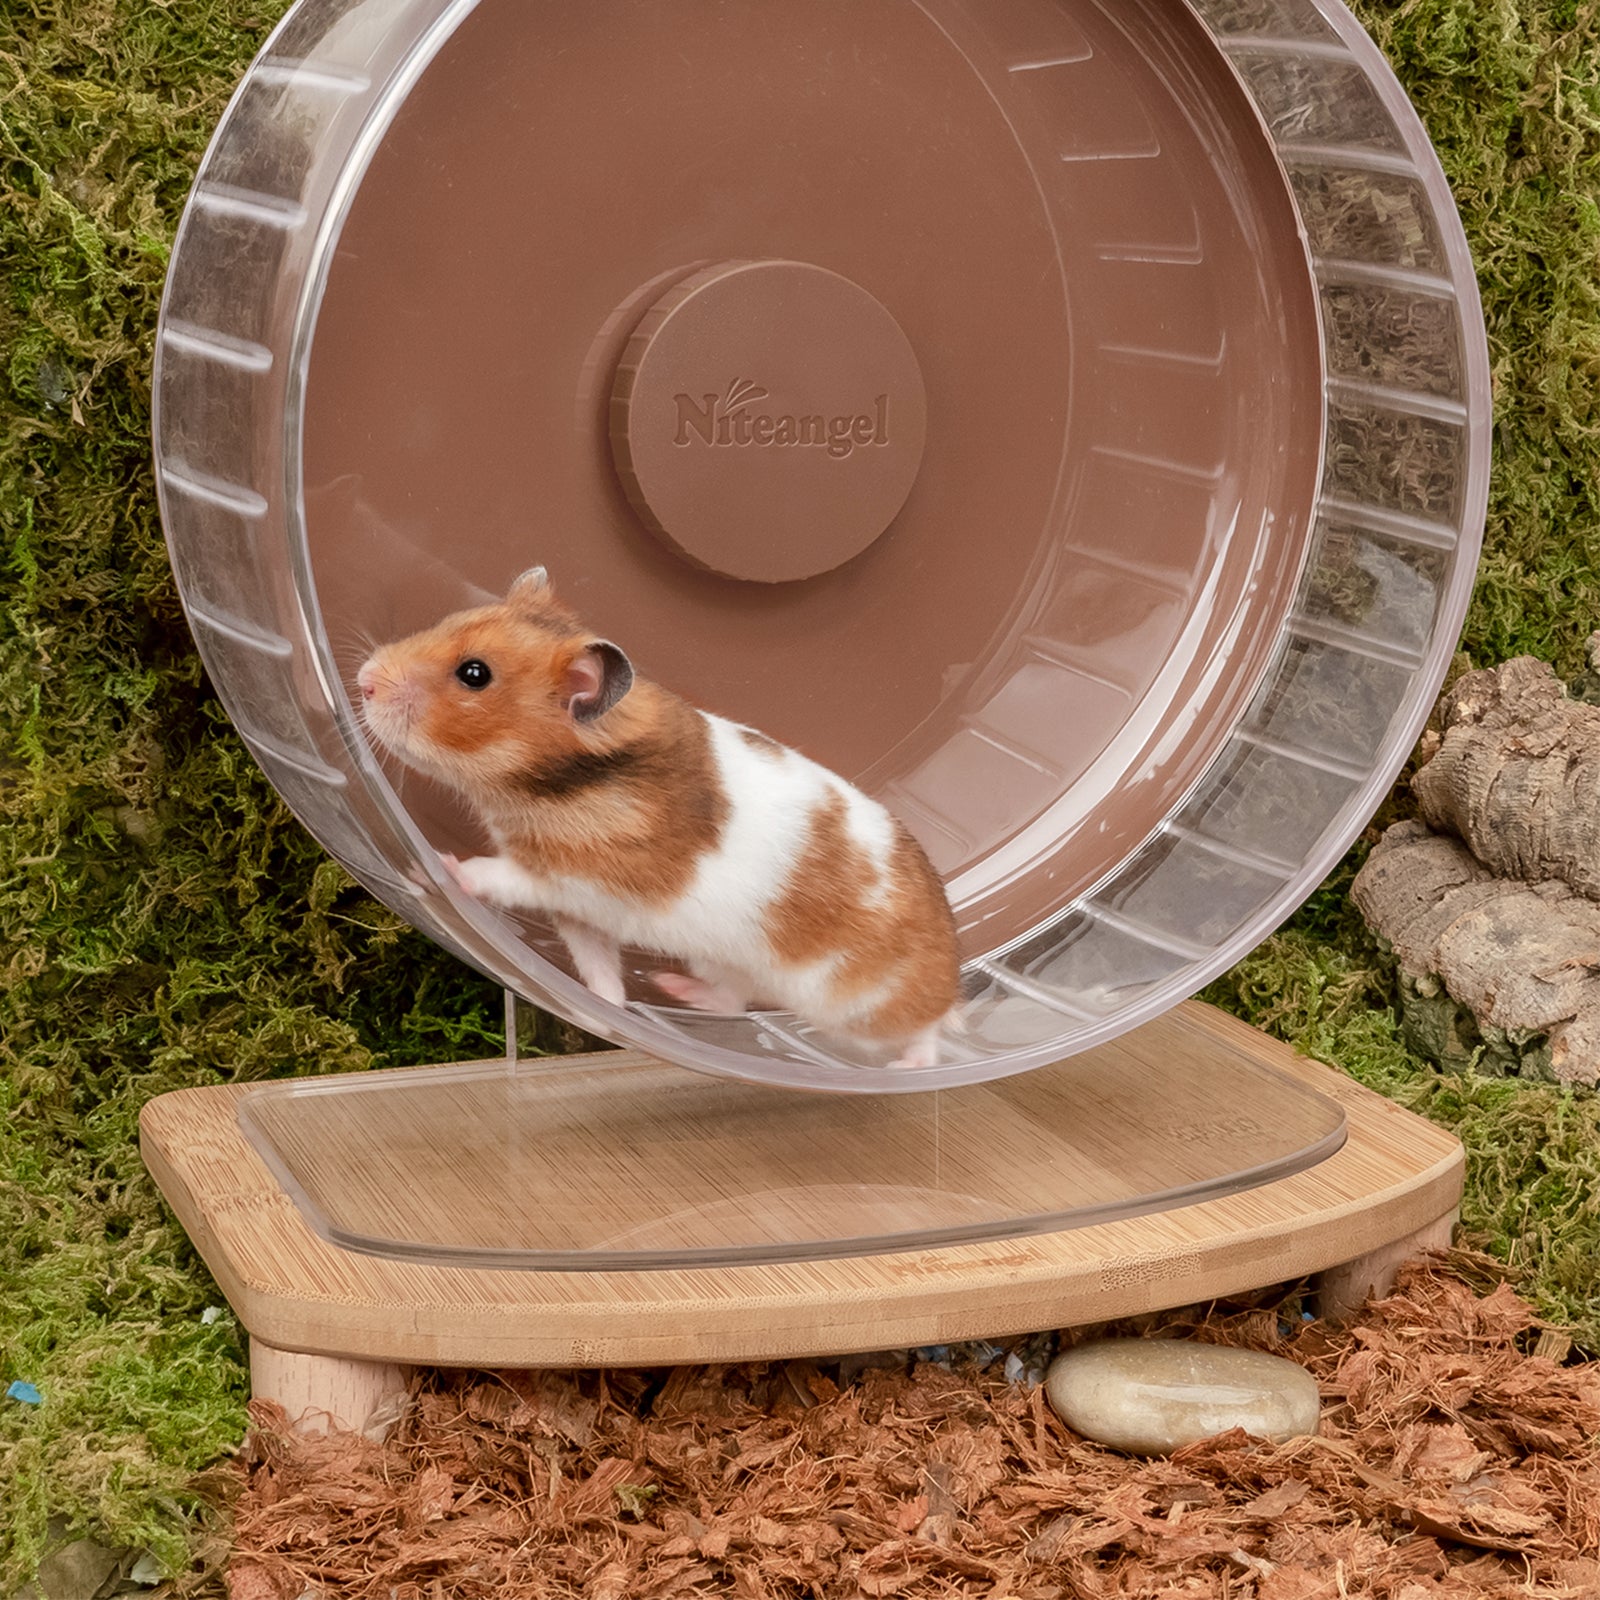 Niteangel Anti-Slide Hamster Wheel Platform - Niteangel Pet CA